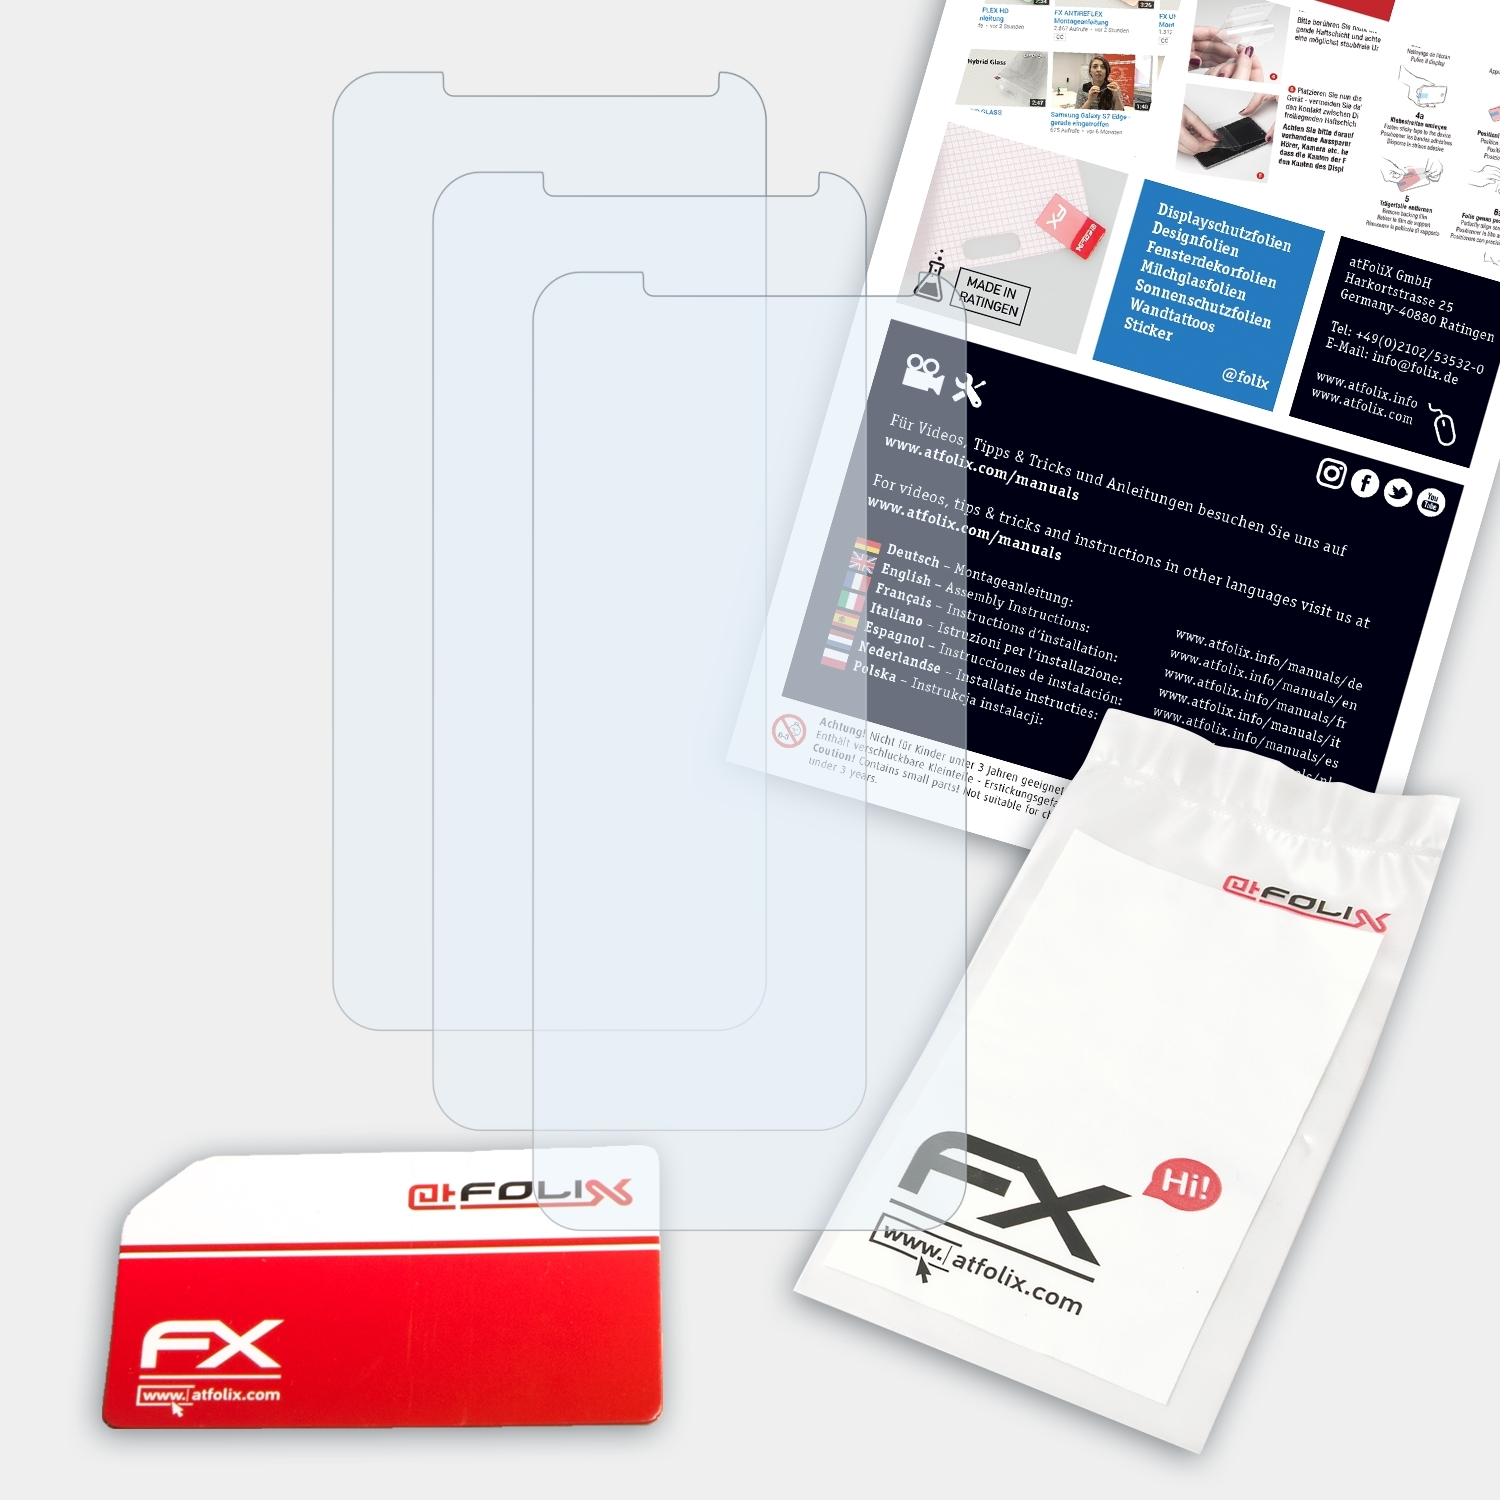 Vernee 3x X1) ATFOLIX FX-Clear Displayschutz(für